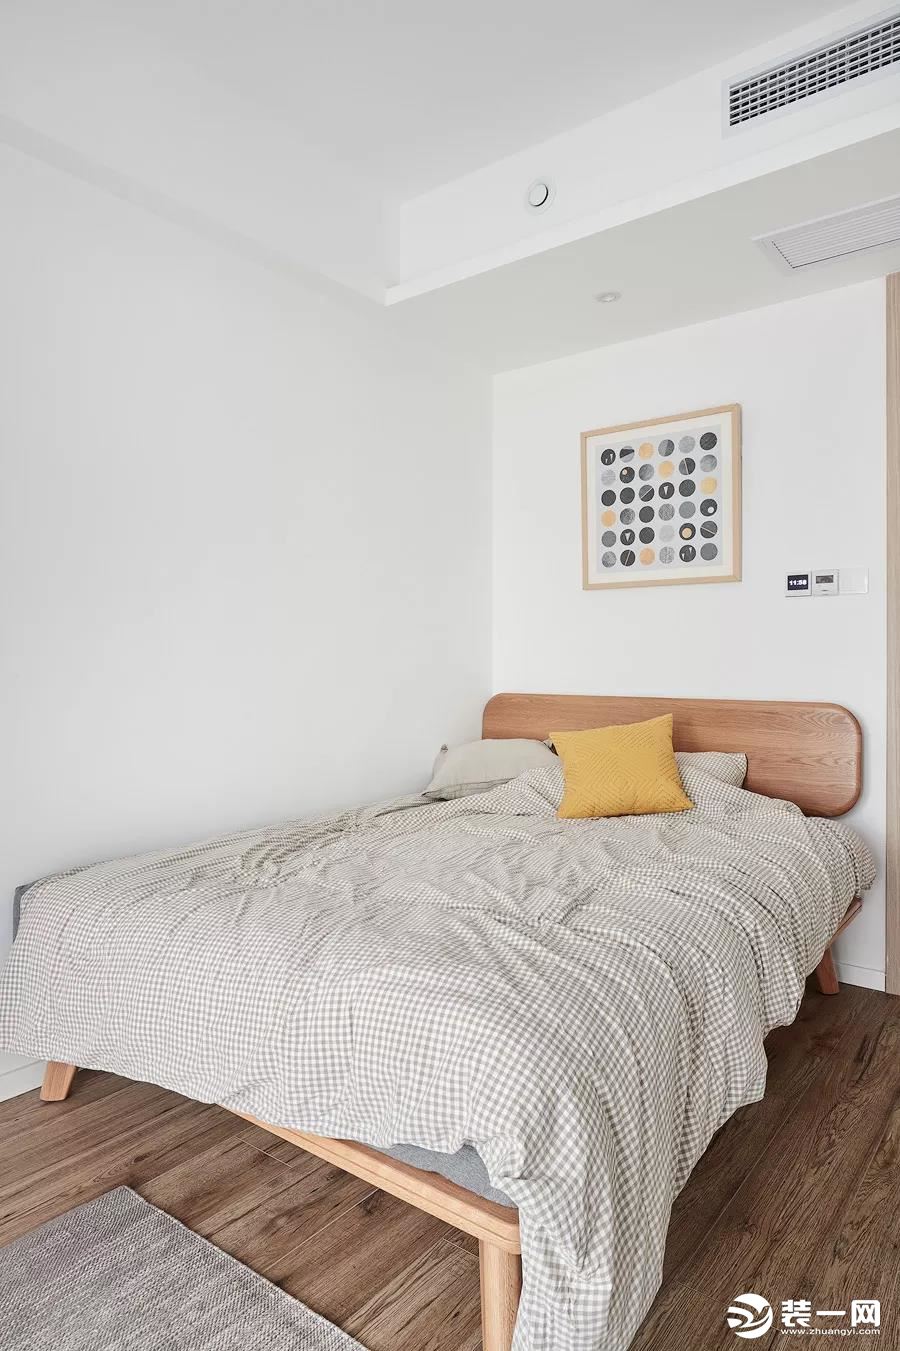  小面积的次卧把床靠墙布置，腾出了更加宽敞的通道空间。简单舒适的床品，营造静谧安逸的睡眠氛围。